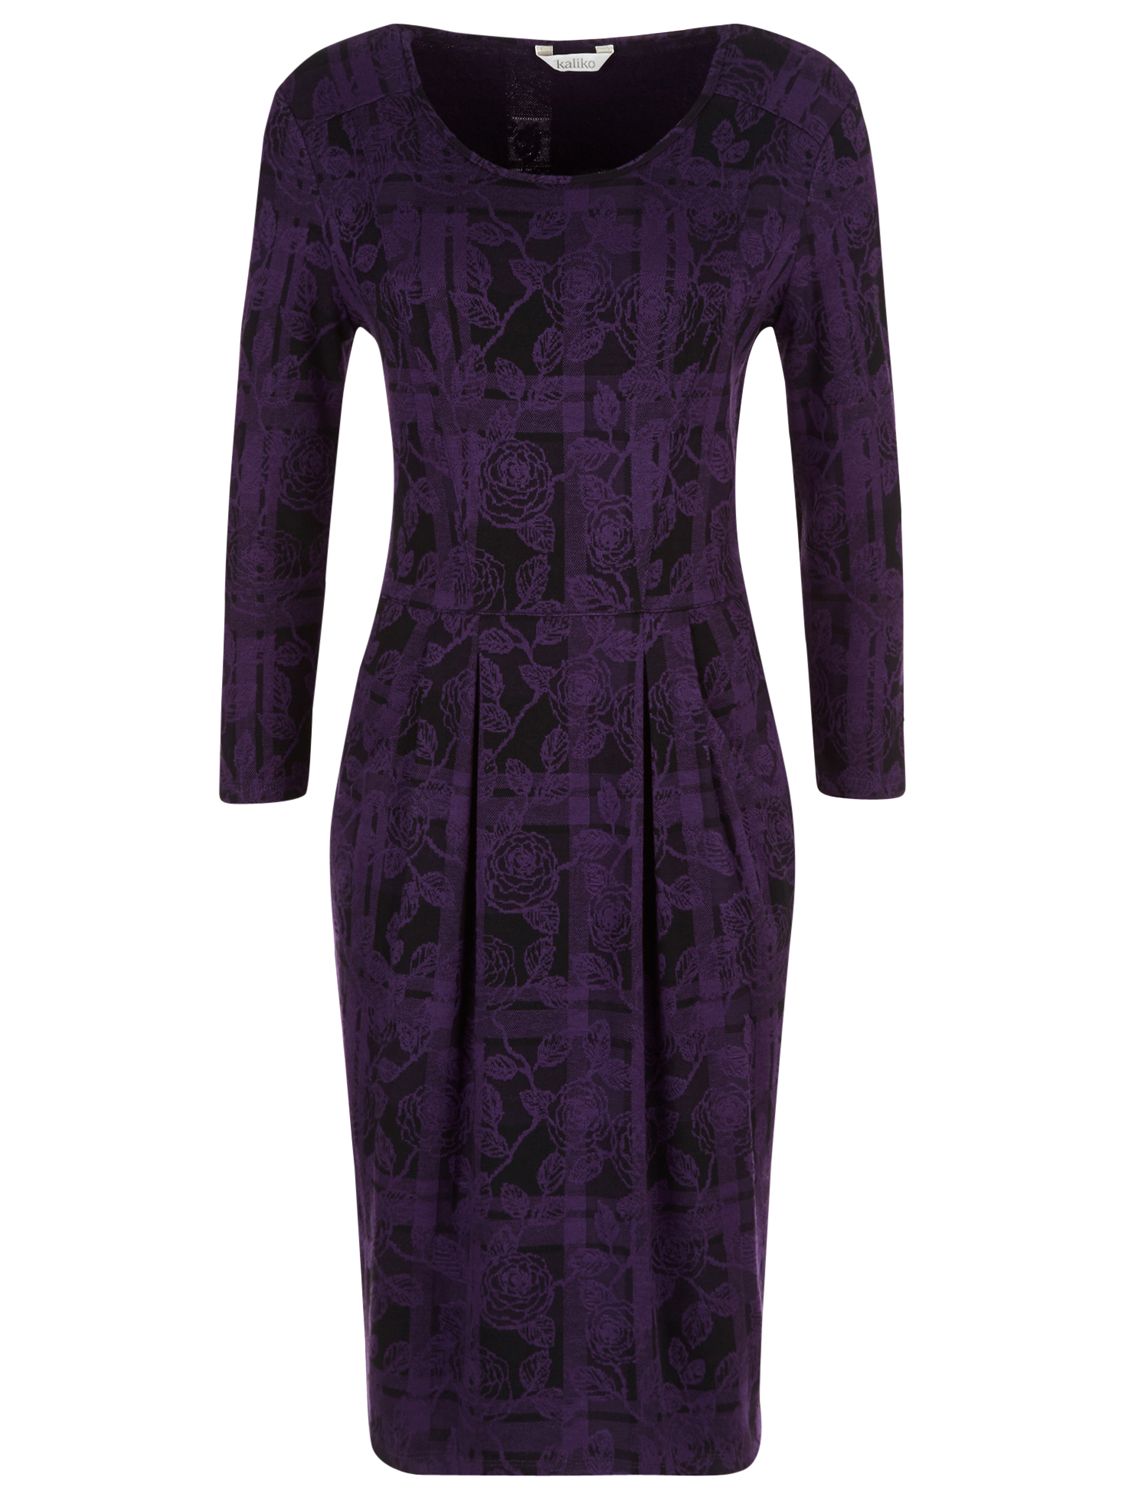 Buy Kaliko Check Lace Jacquard Dress, Dark Purple Online at johnlewis ...